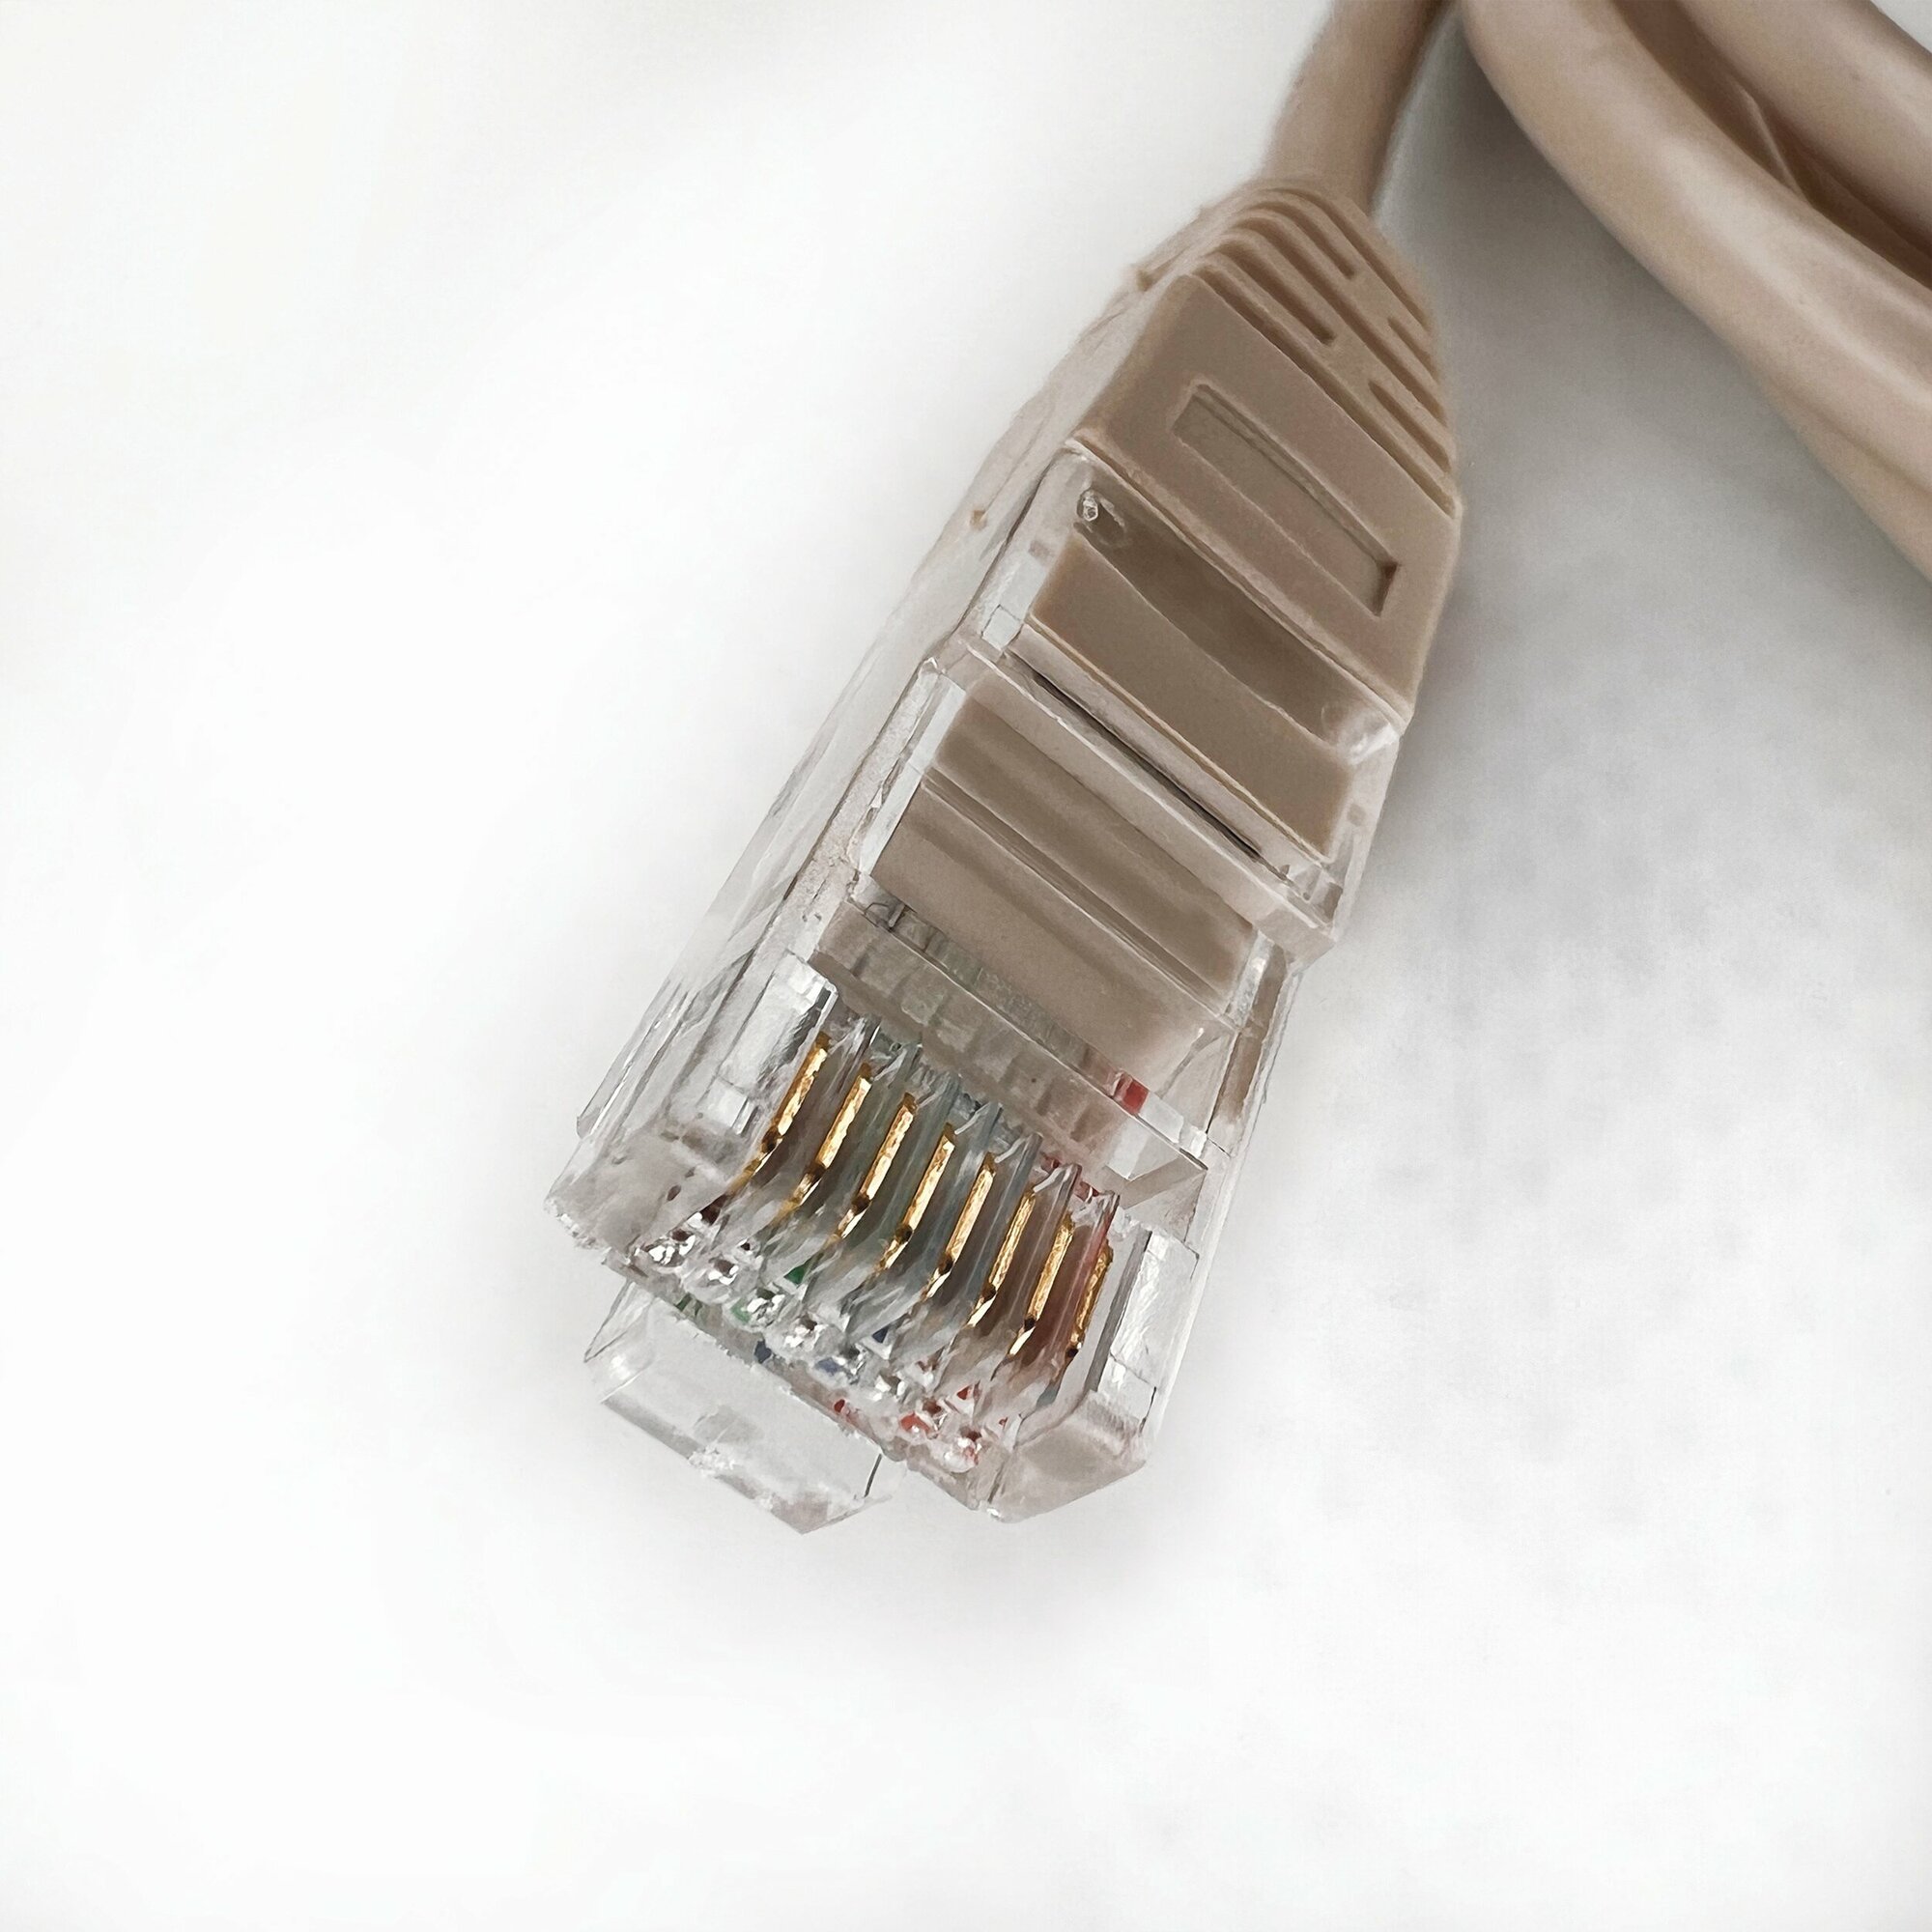 Патч корд 10 м Голд Мастер UTP 5е RJ45 интернет кабель 10 метров LAN сетевой Ethernet патчкорд серый (NA102--10M), контакты blade с позолотой 03FU